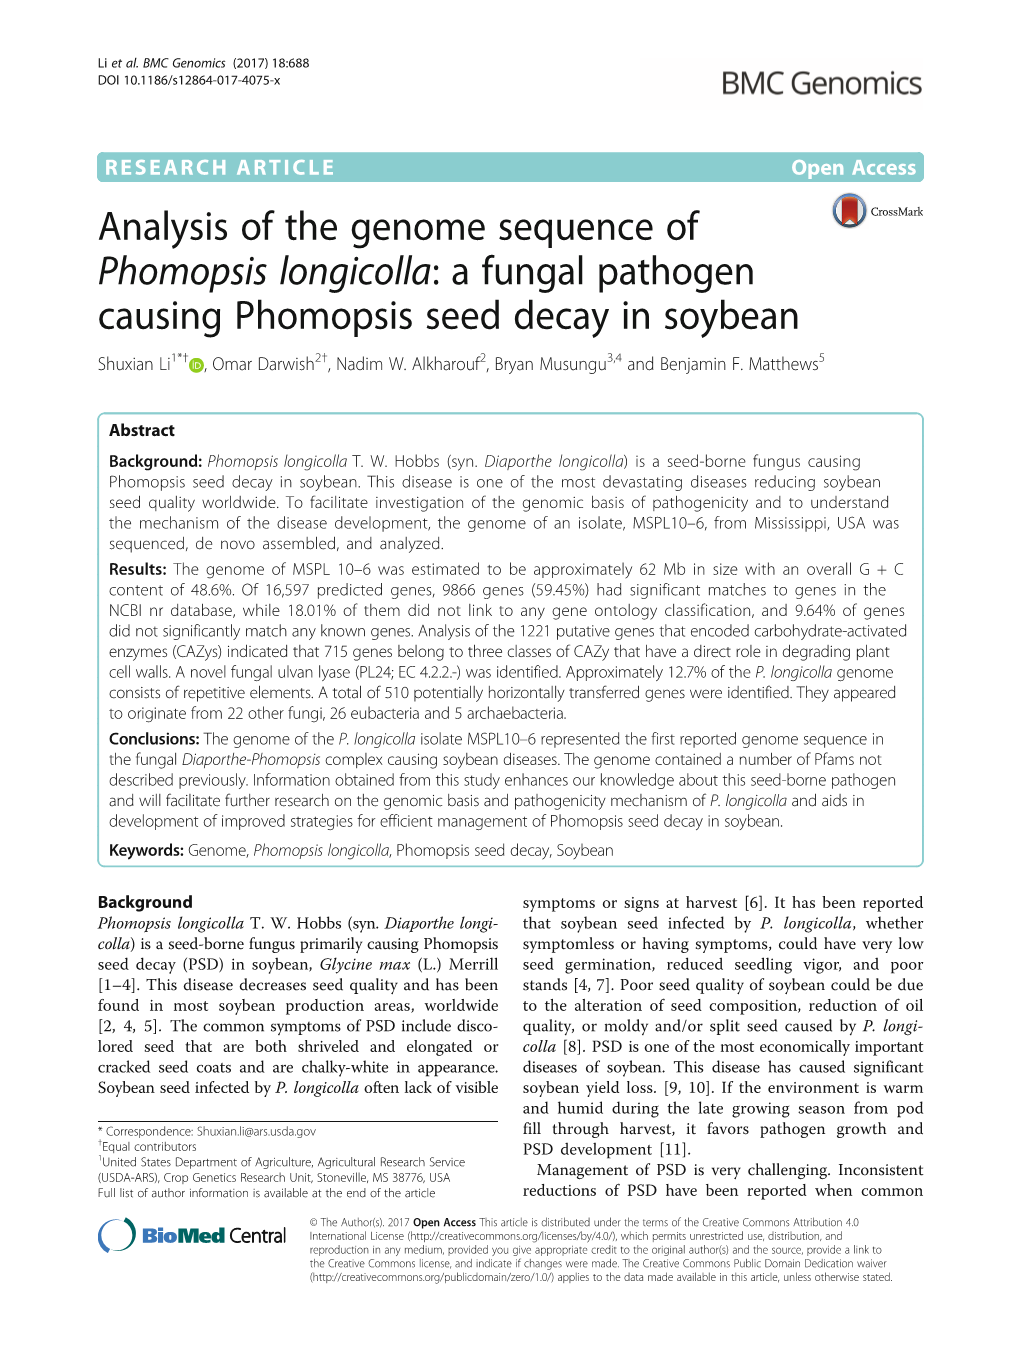 A Fungal Pathogen Causing Phomopsis Seed Decay in Soybean Shuxian Li1*† , Omar Darwish2†, Nadim W